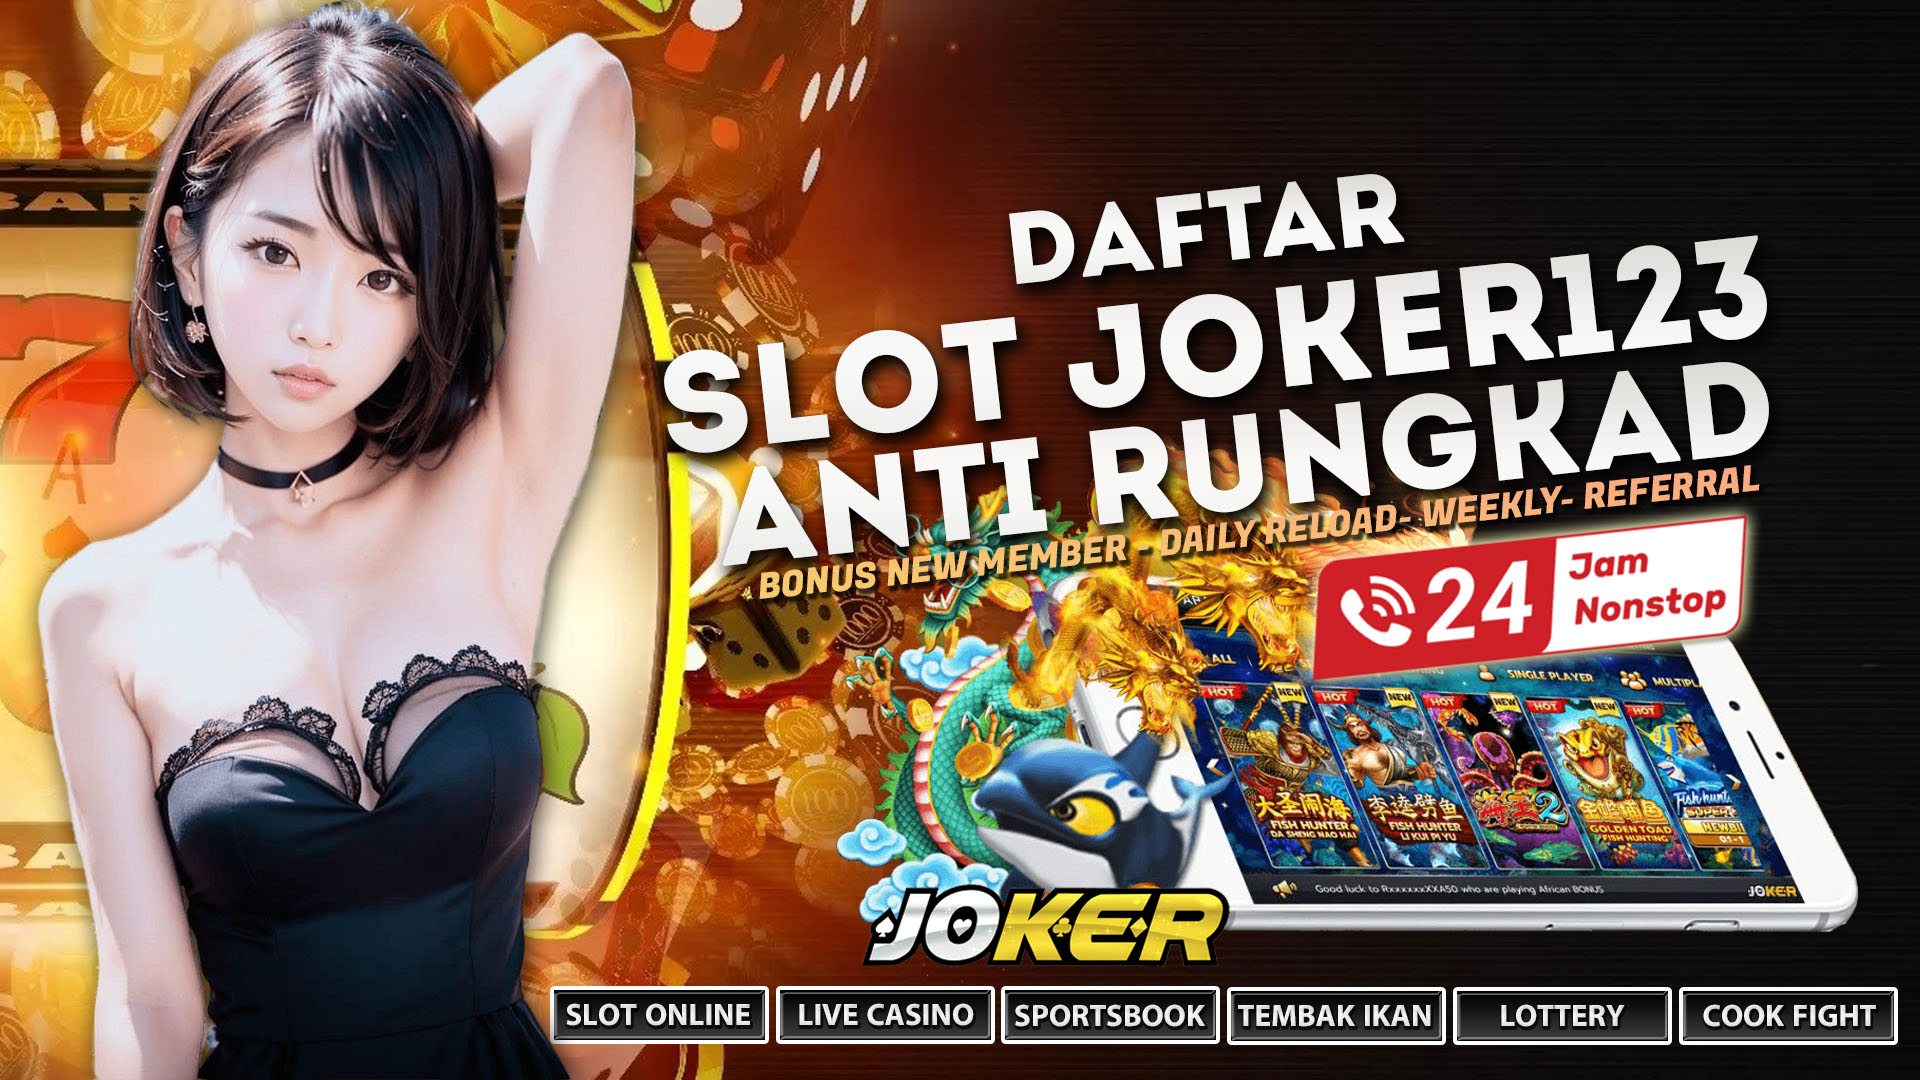 Slot Joker123 Terpercaya Online 24 Jam